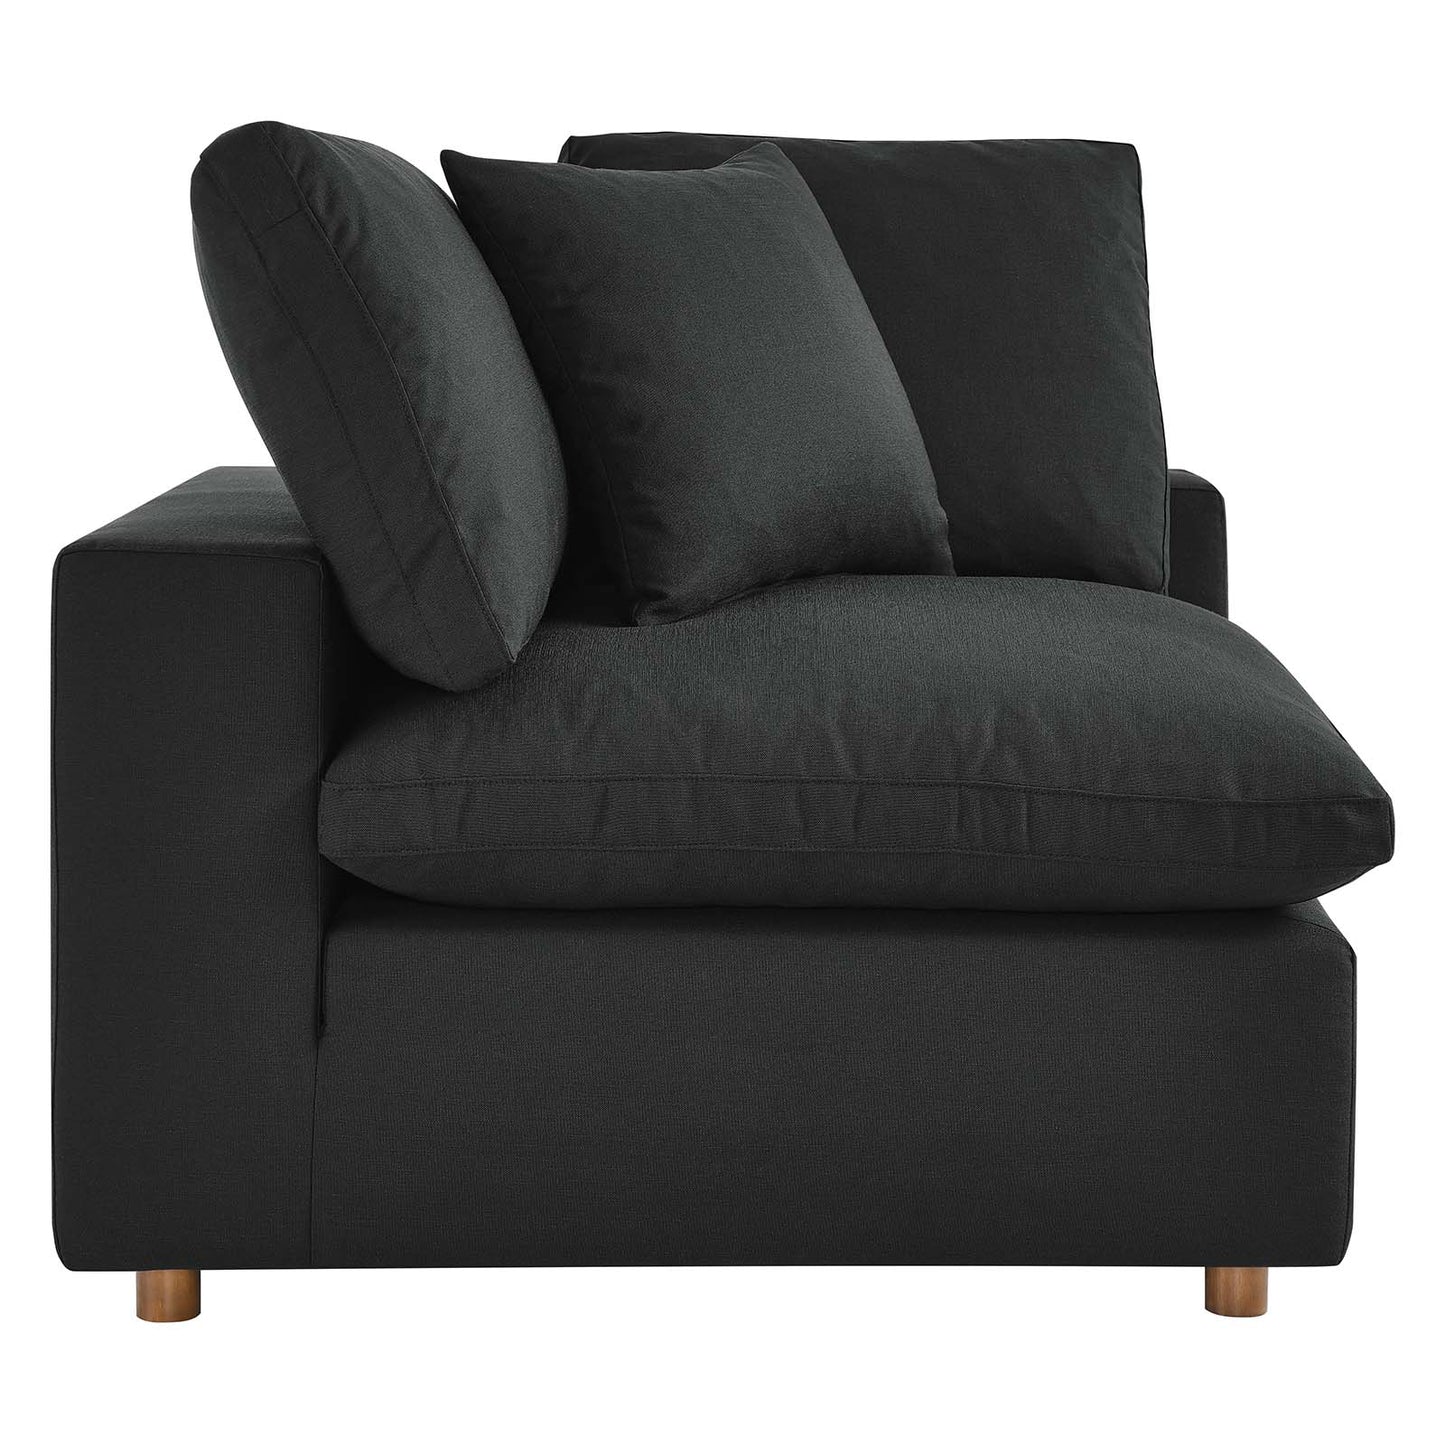 Commix Down Filled Overstuffed 2 Piece Sectional Sofa Set Black EEI-3354-BLK